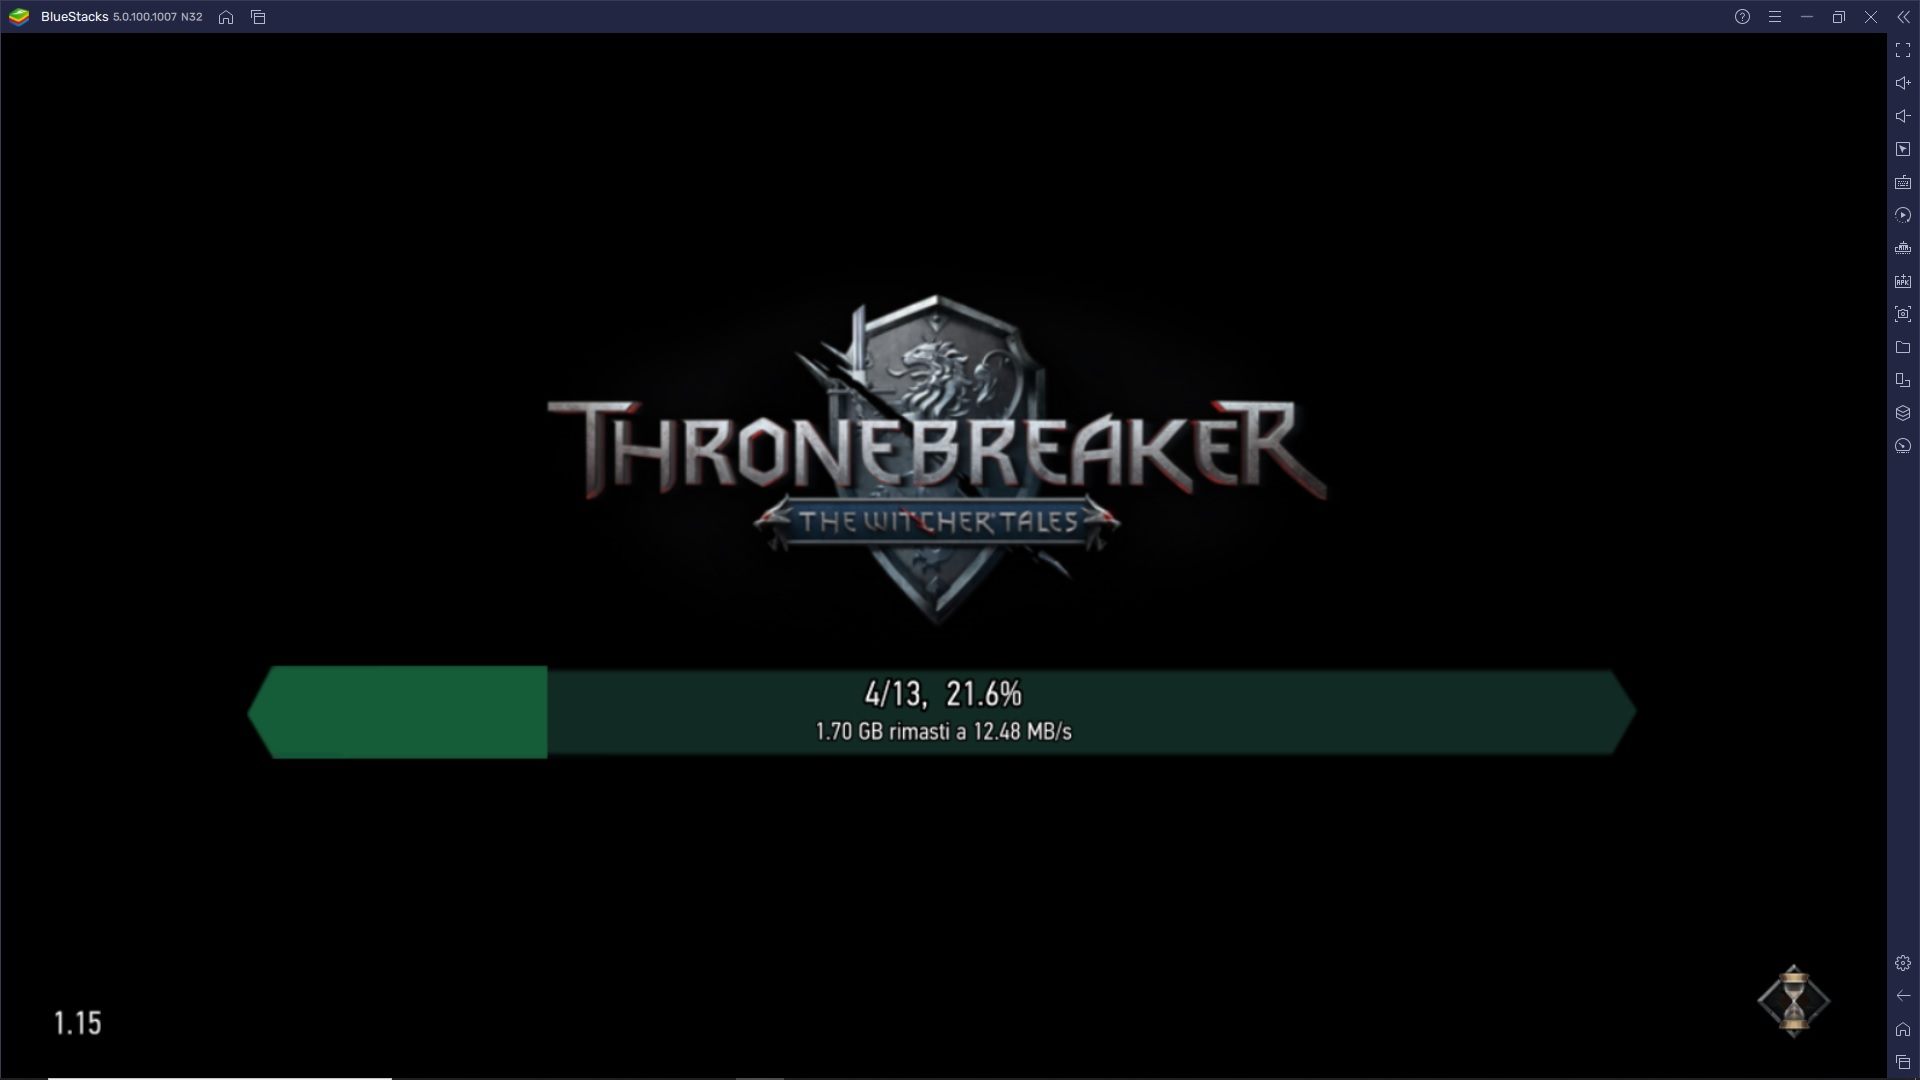 The Witcher Tales: Thronebreaker è disponibile per Android! - Provalo subito su PC con BlueStacks